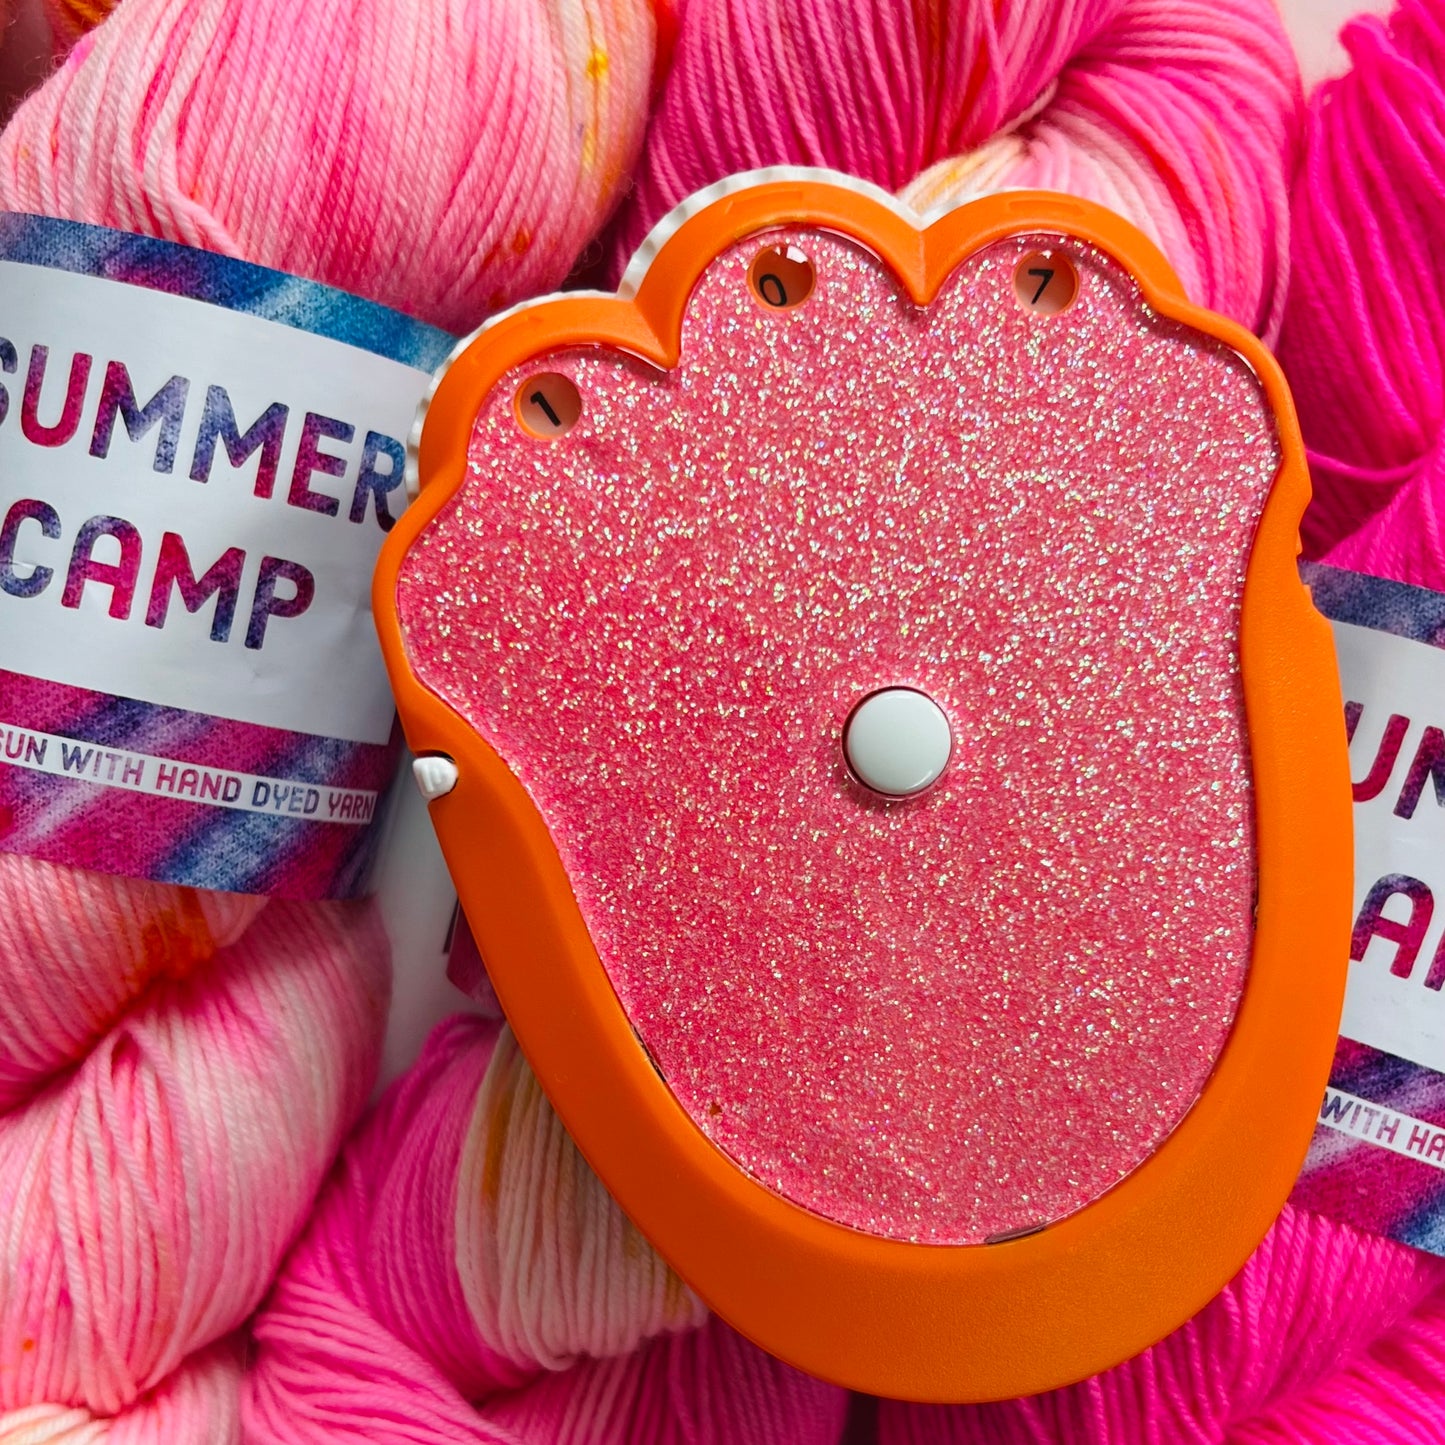 The Knit & Crochet Kit - Tangerine Twilight